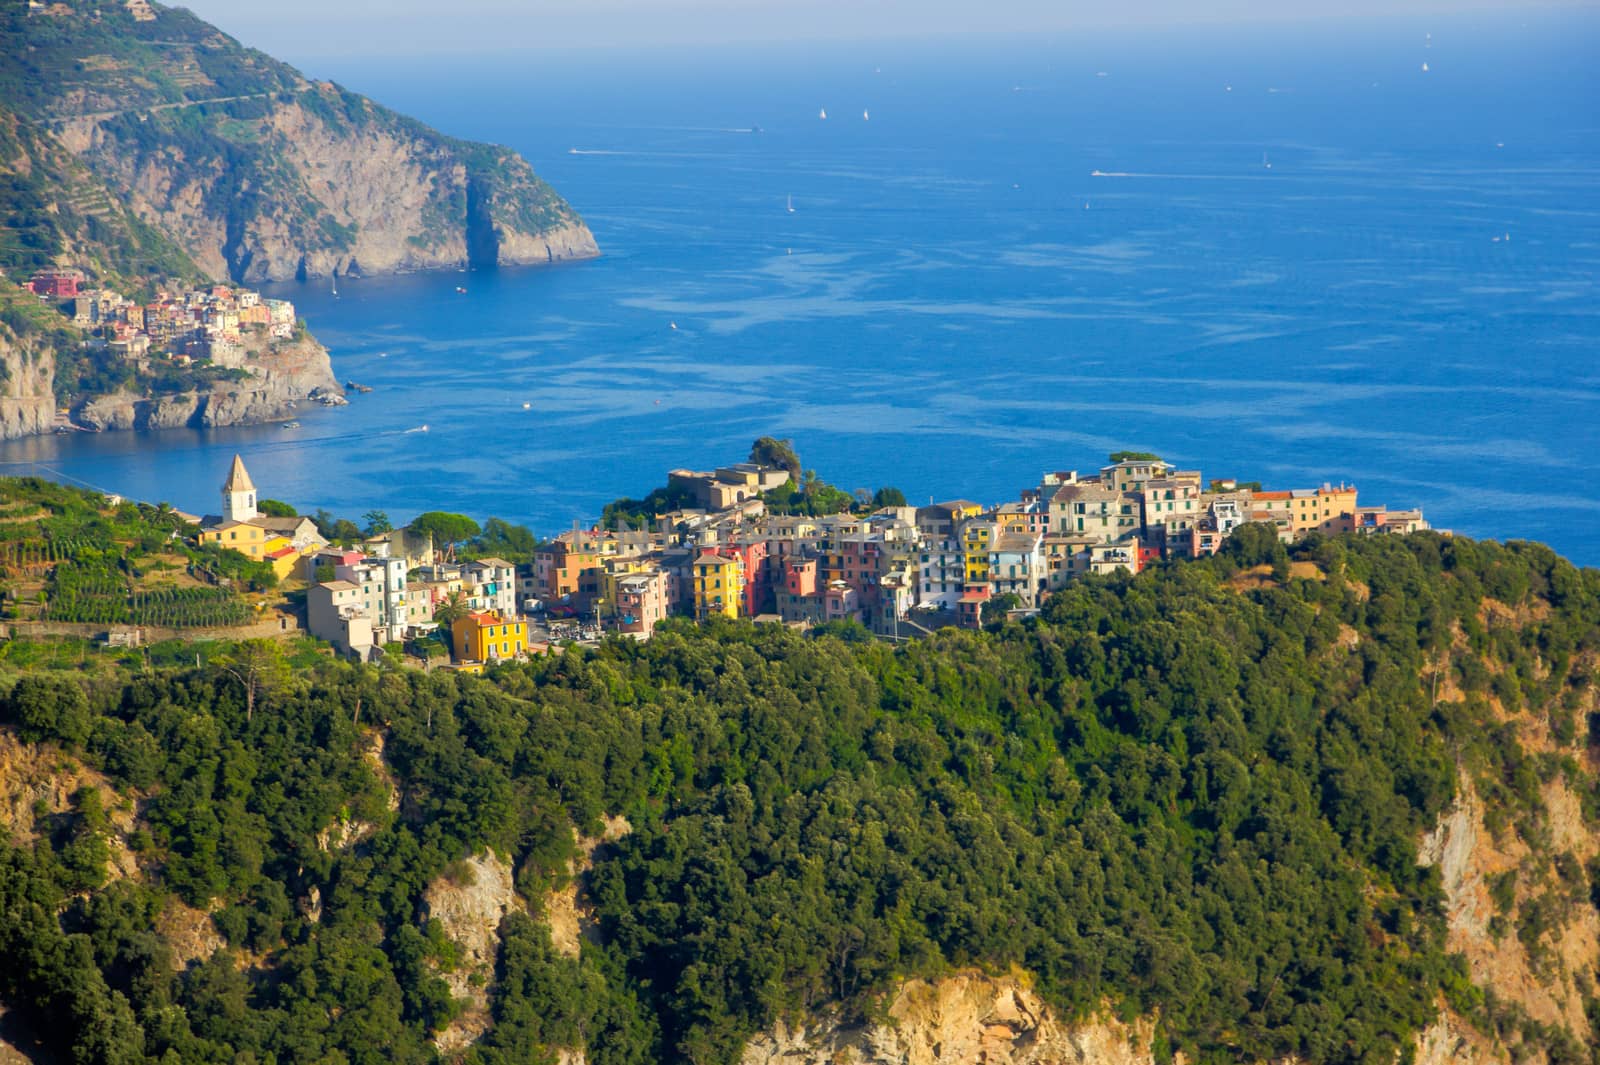 Picture of Corniglia in Cinque Terre from a distance